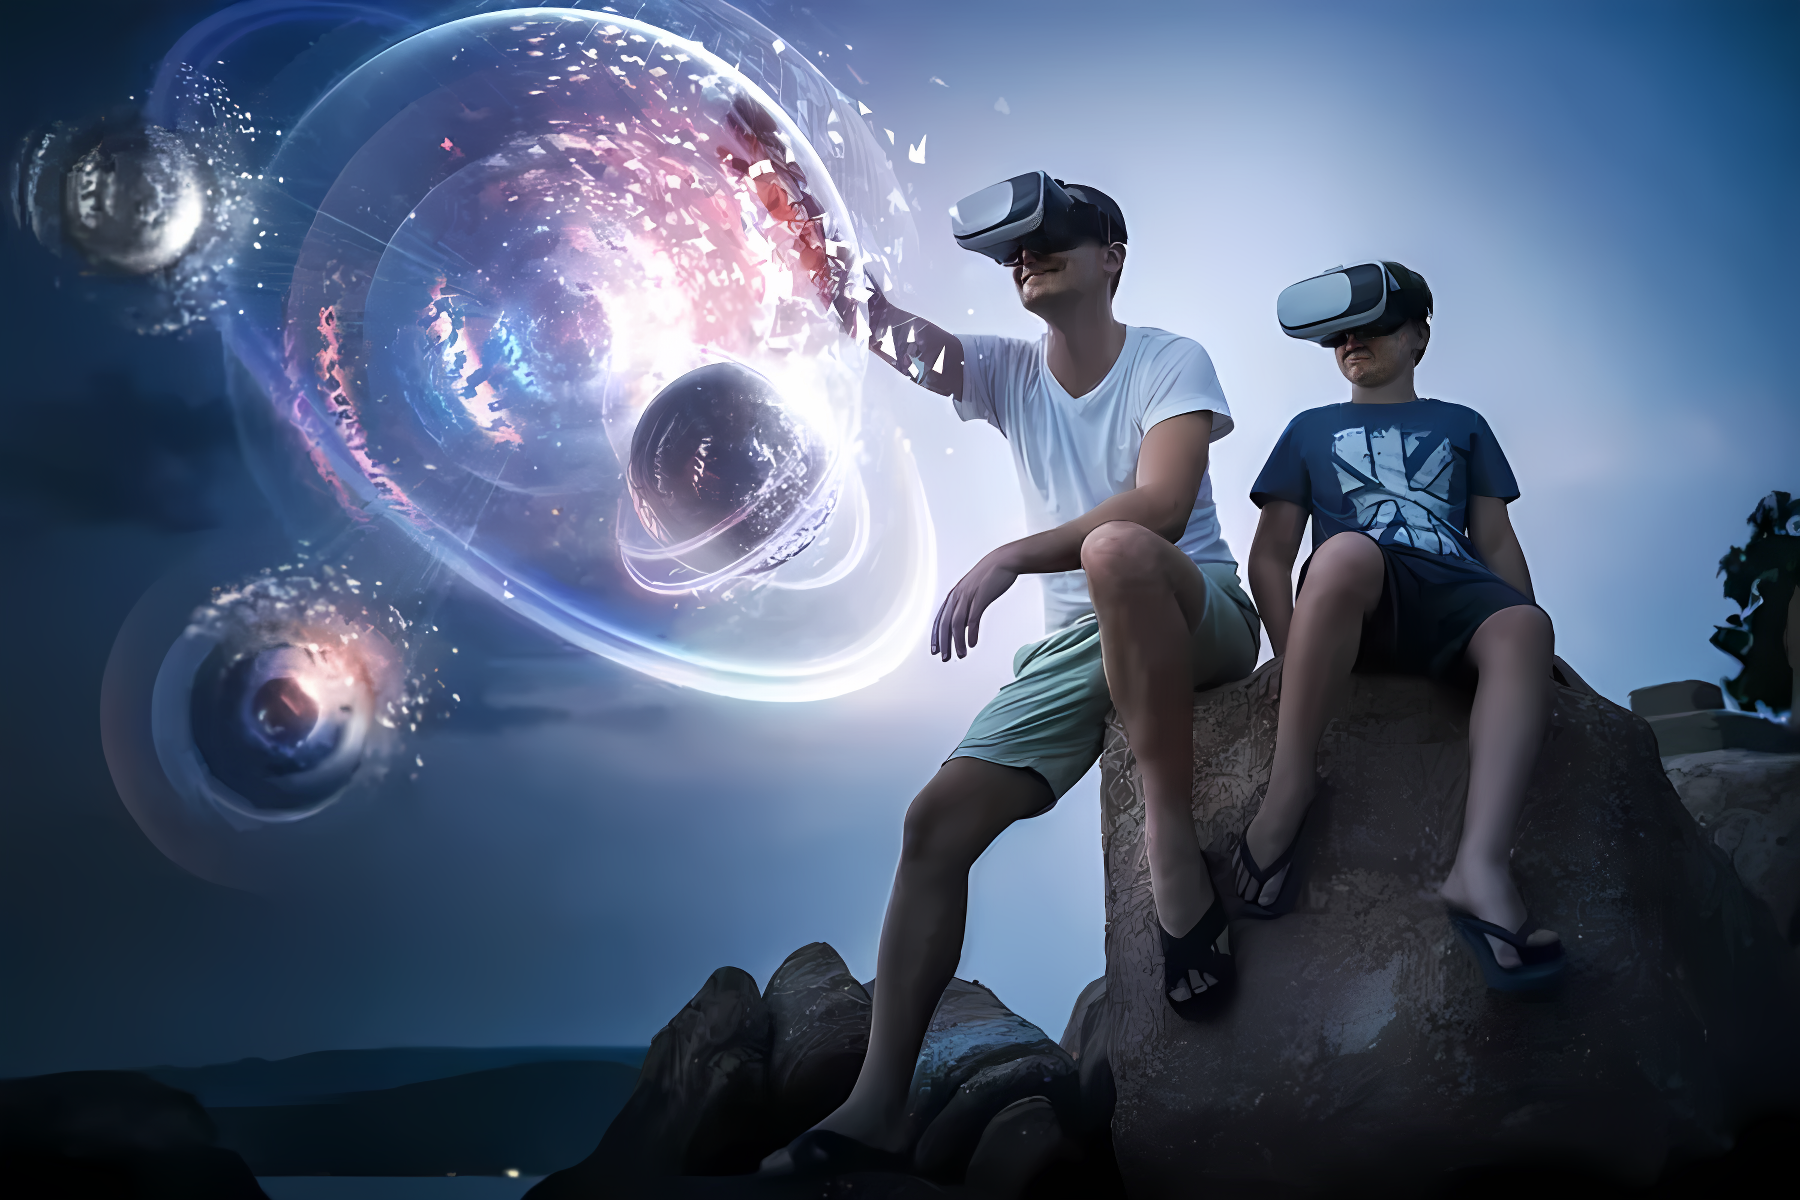 图片展示两人戴着虚拟现实头盔坐在岩石上，周围浮现出太空星系般的虚拟图像，夜空为背景，科技感十足。